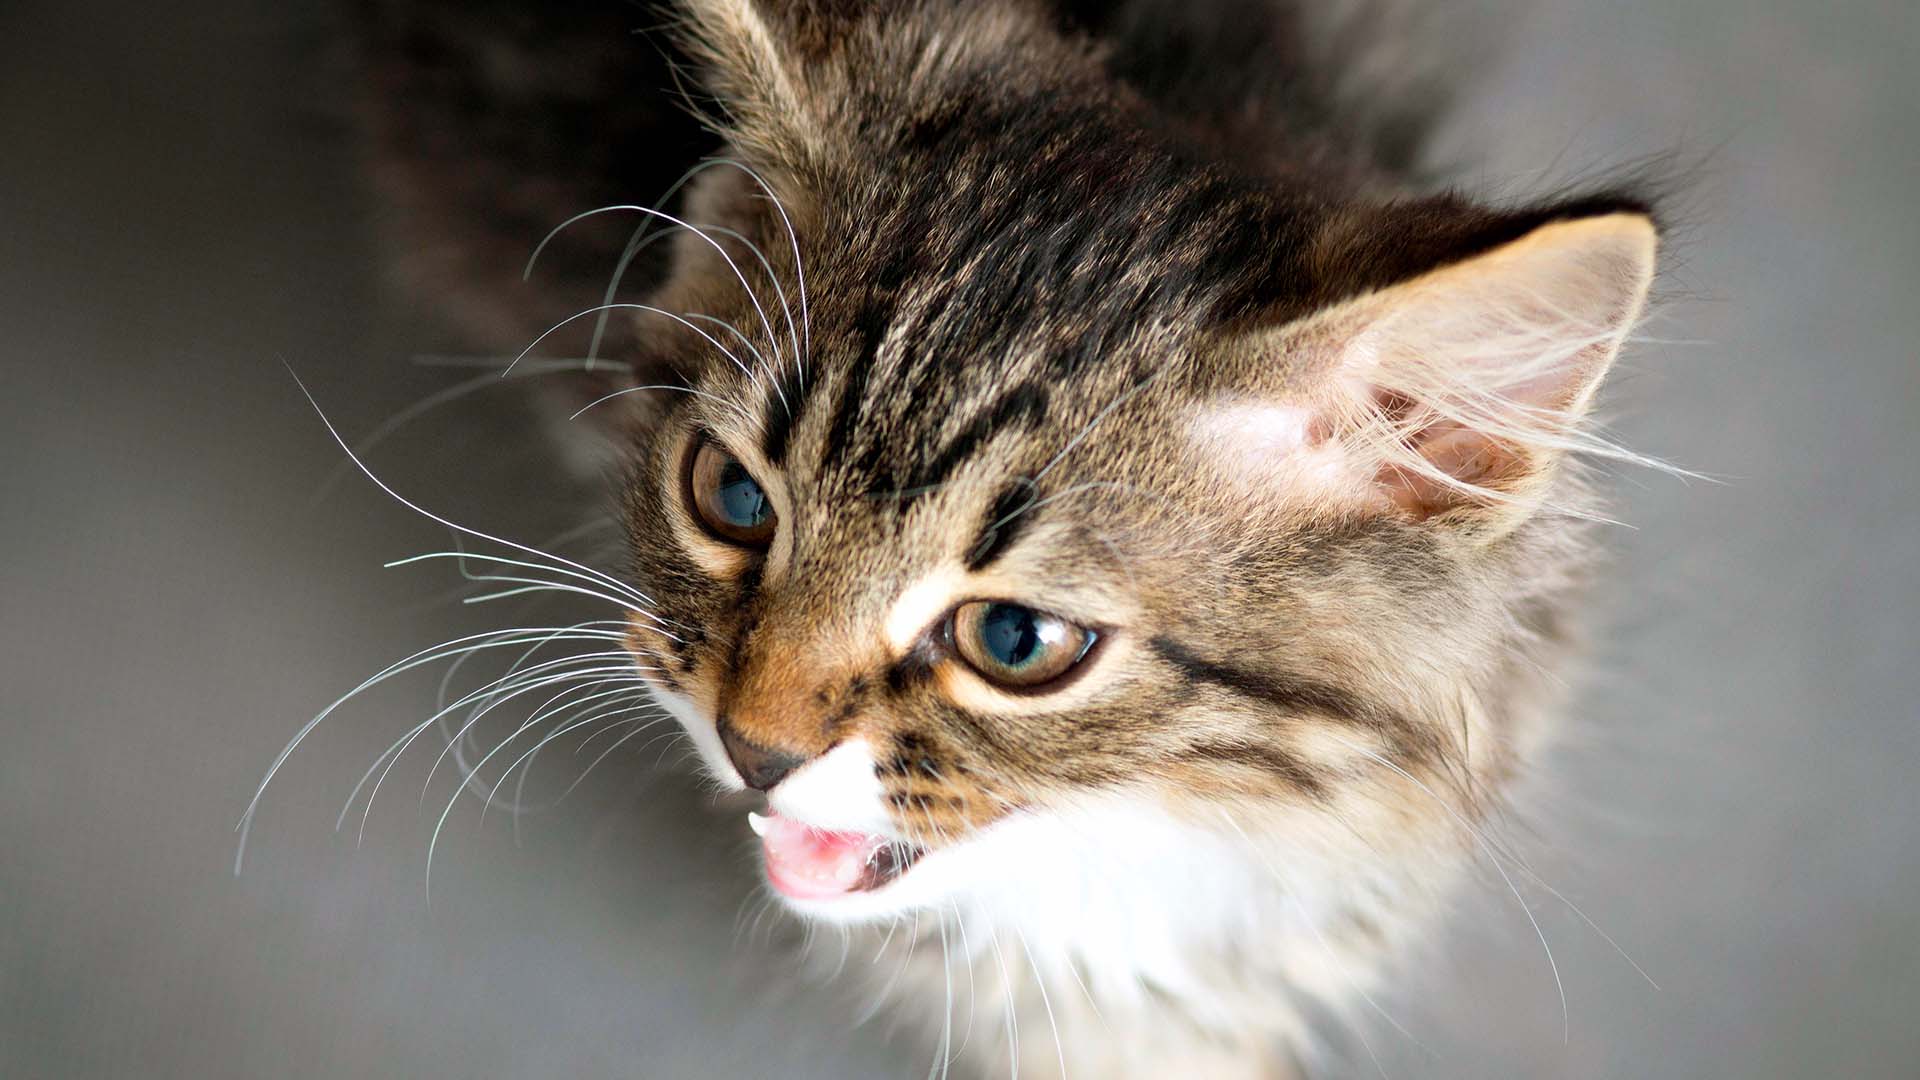 gatto con un'aria minacciosa che emette un "ringhio," indicando una situazione di aggressività